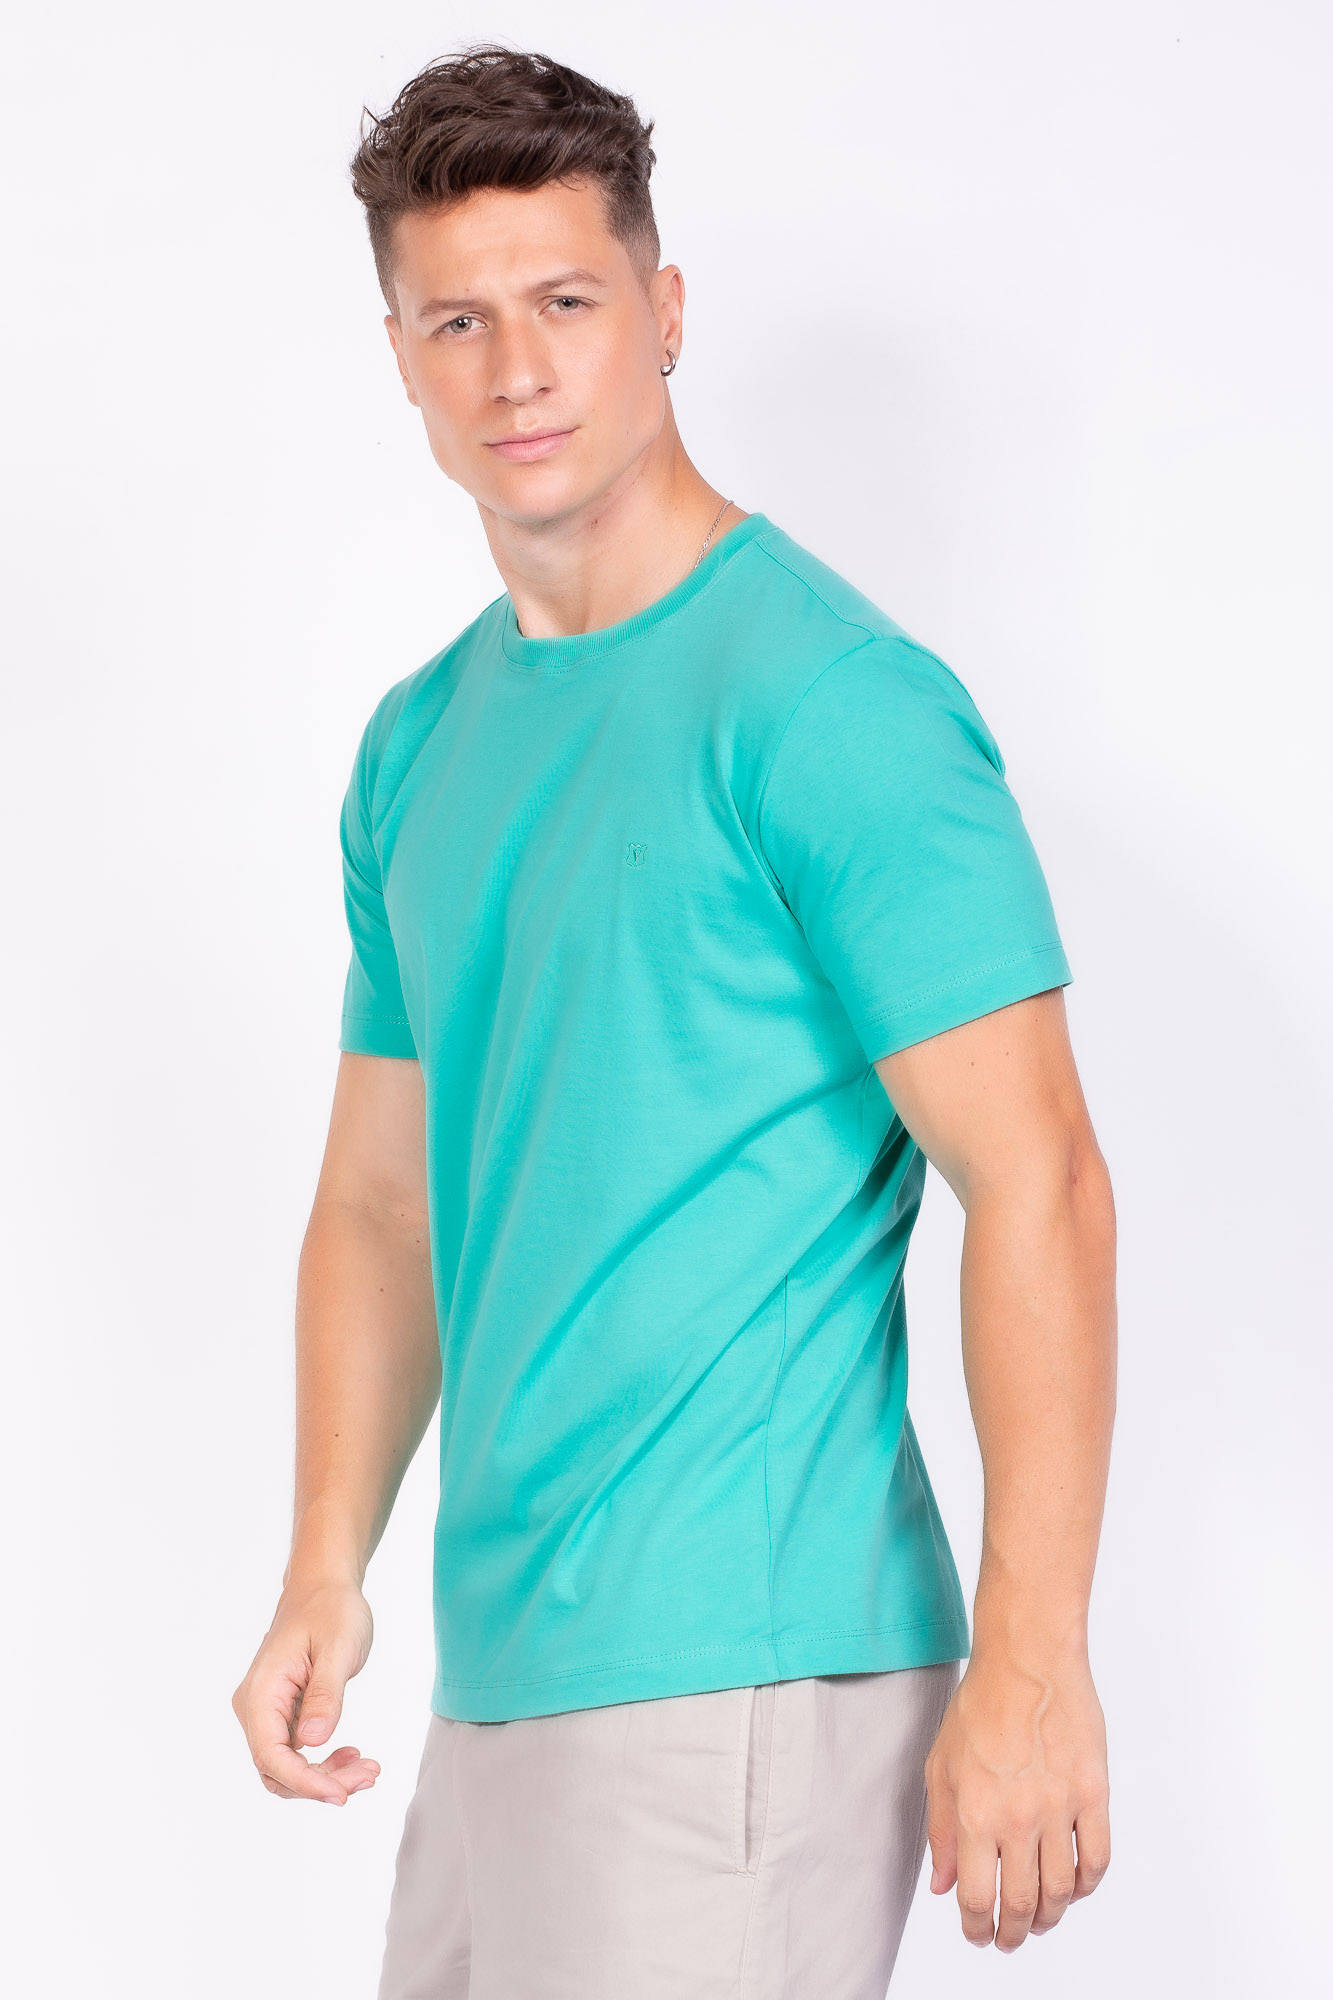 Camiseta Básica 100% algodão Verde esmeralda